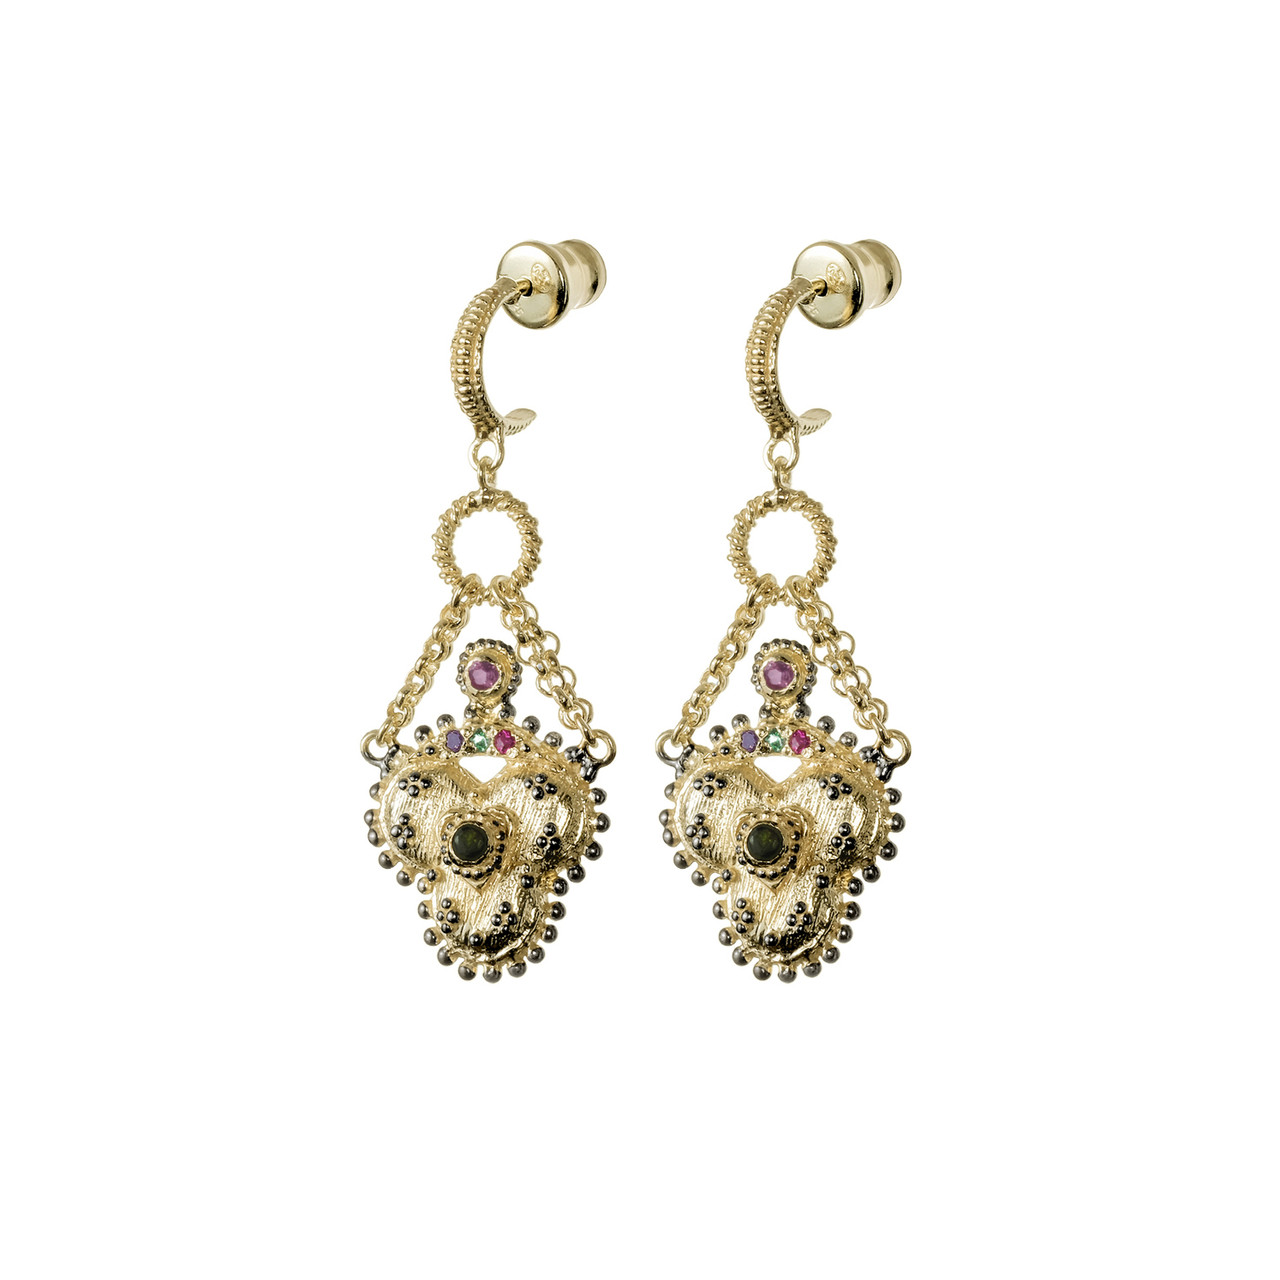 N° 841 Gold Clover Drop Earrings, Marie Laure Chamorel, tomfoolery